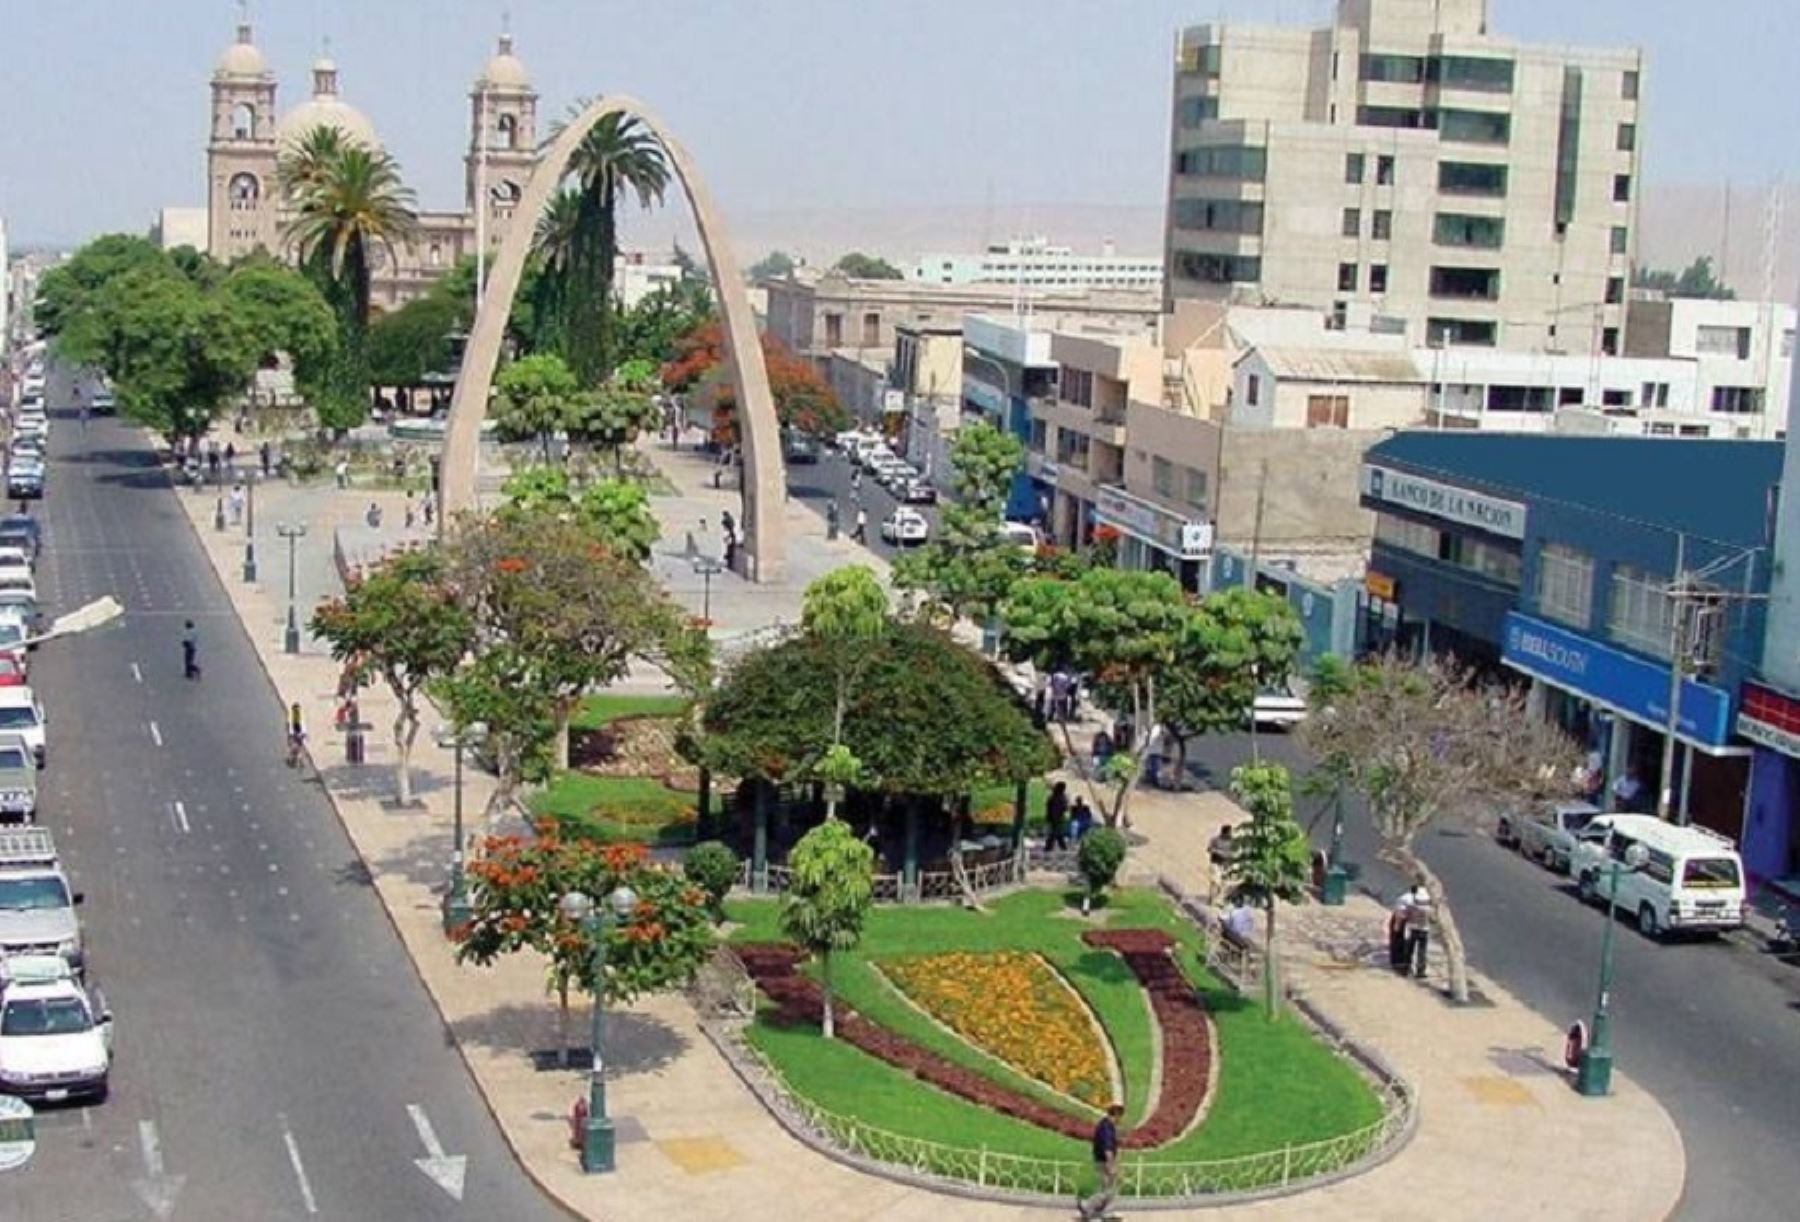 La temperatura diurna en la región Tacna aumentará hasta 33 °C, al igual que la radiación ultravioleta, advirtió el Servicio Nacional de Meteorología e Hidrología (Senamhi) en su pronóstico meteorológico con vigencia hasta el 10 de marzo.